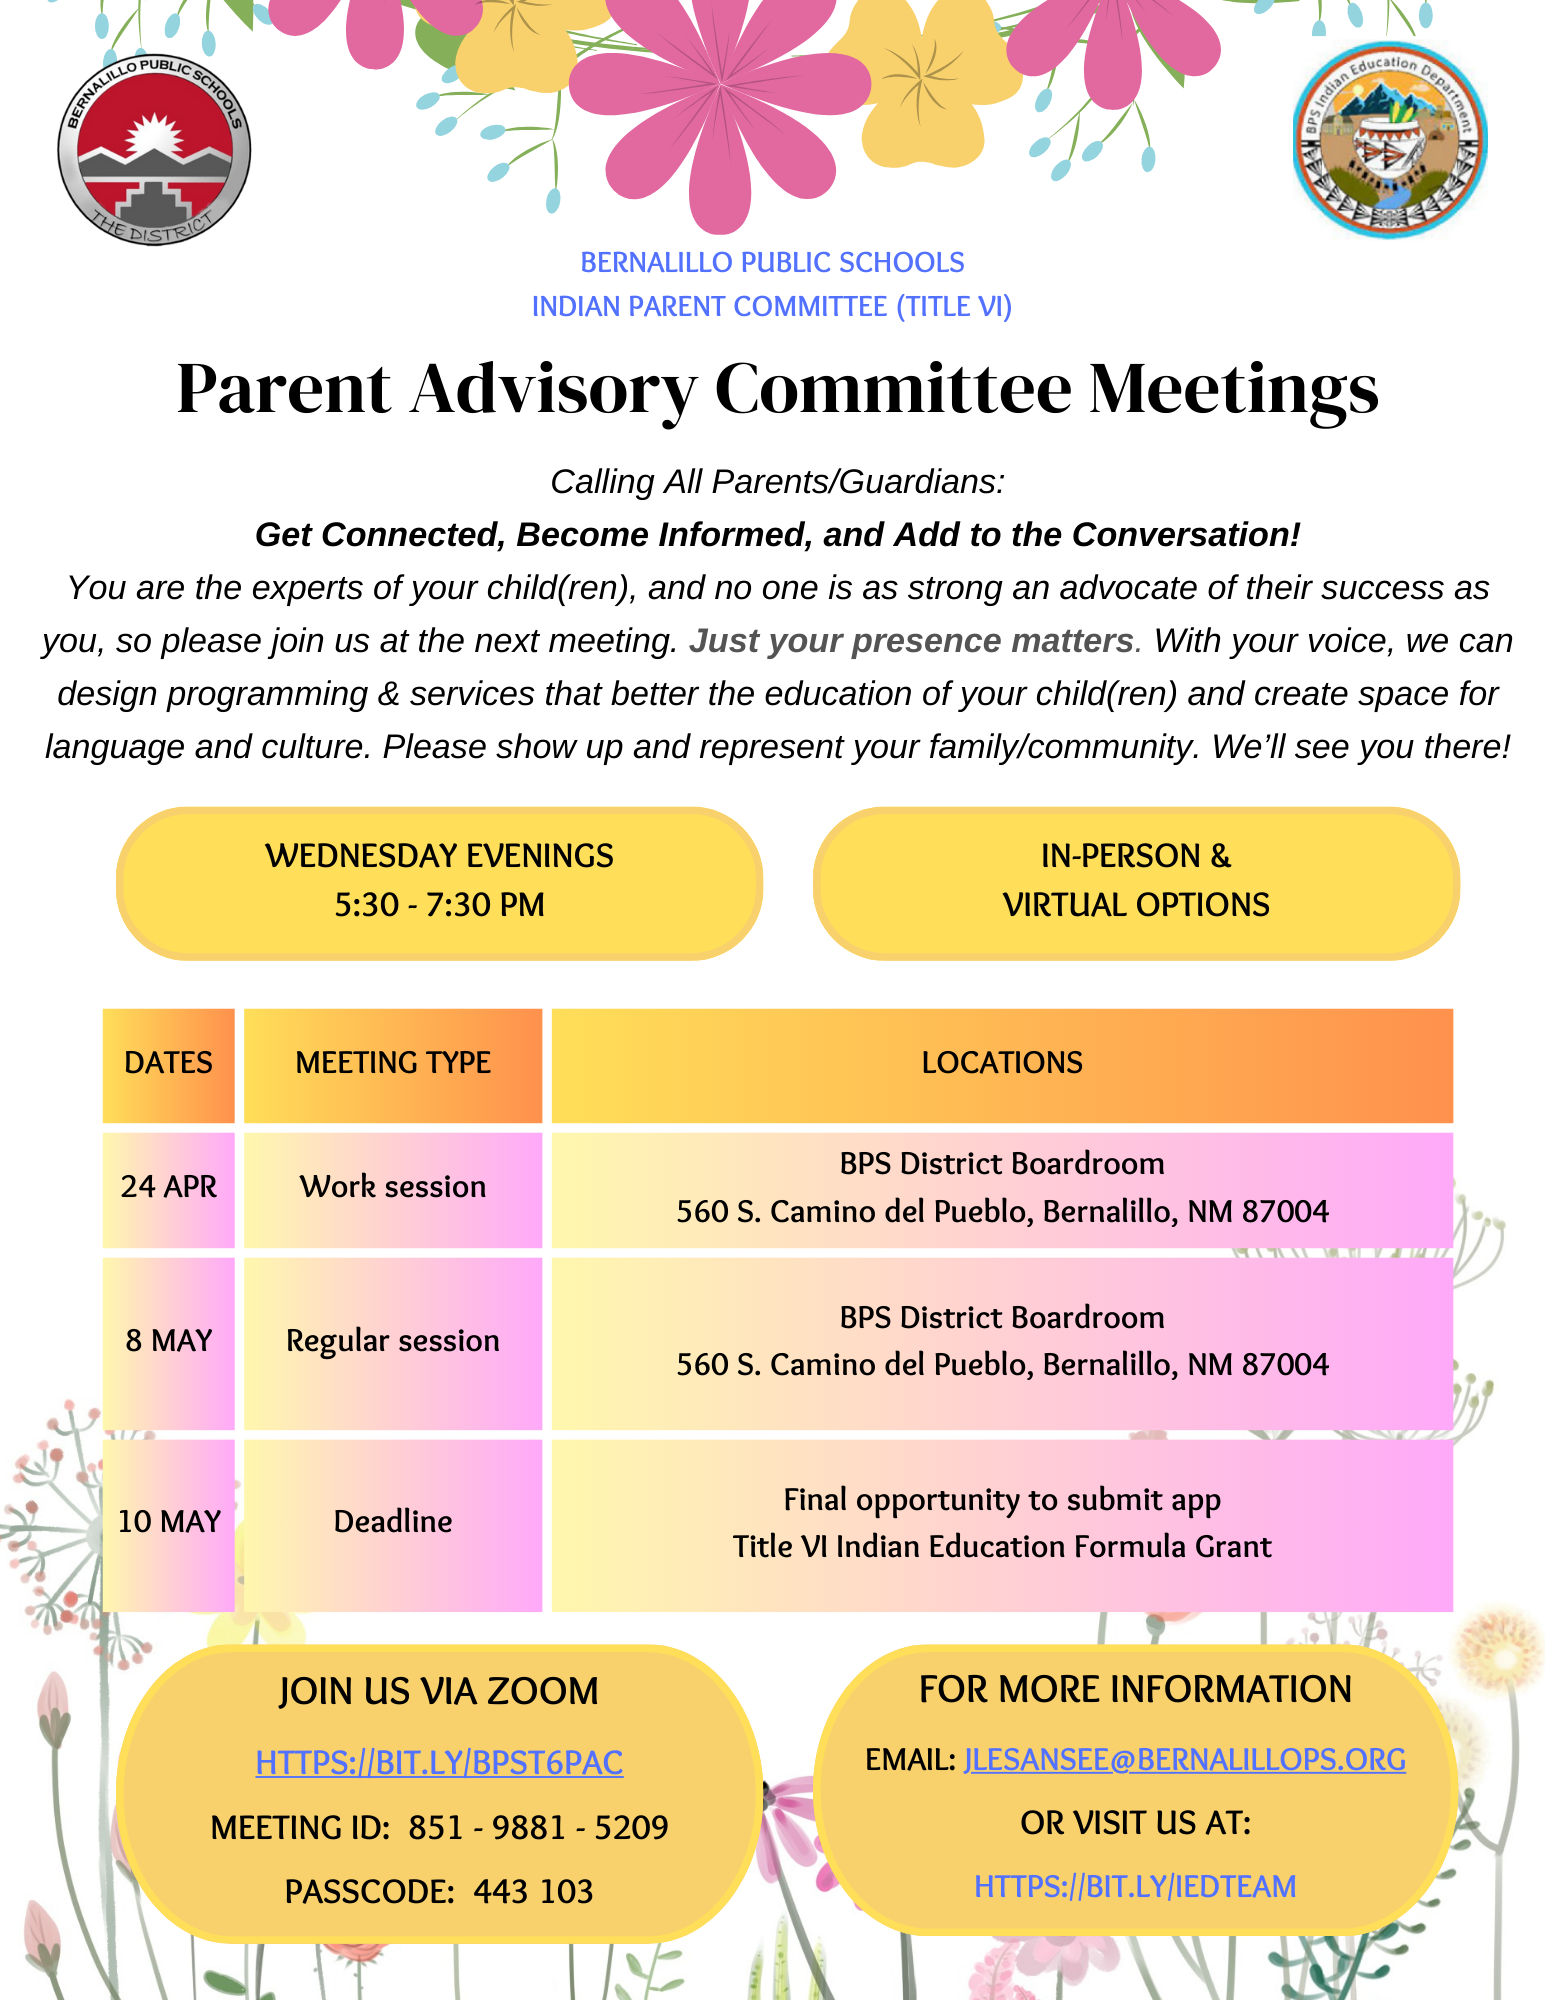 Committee meetings